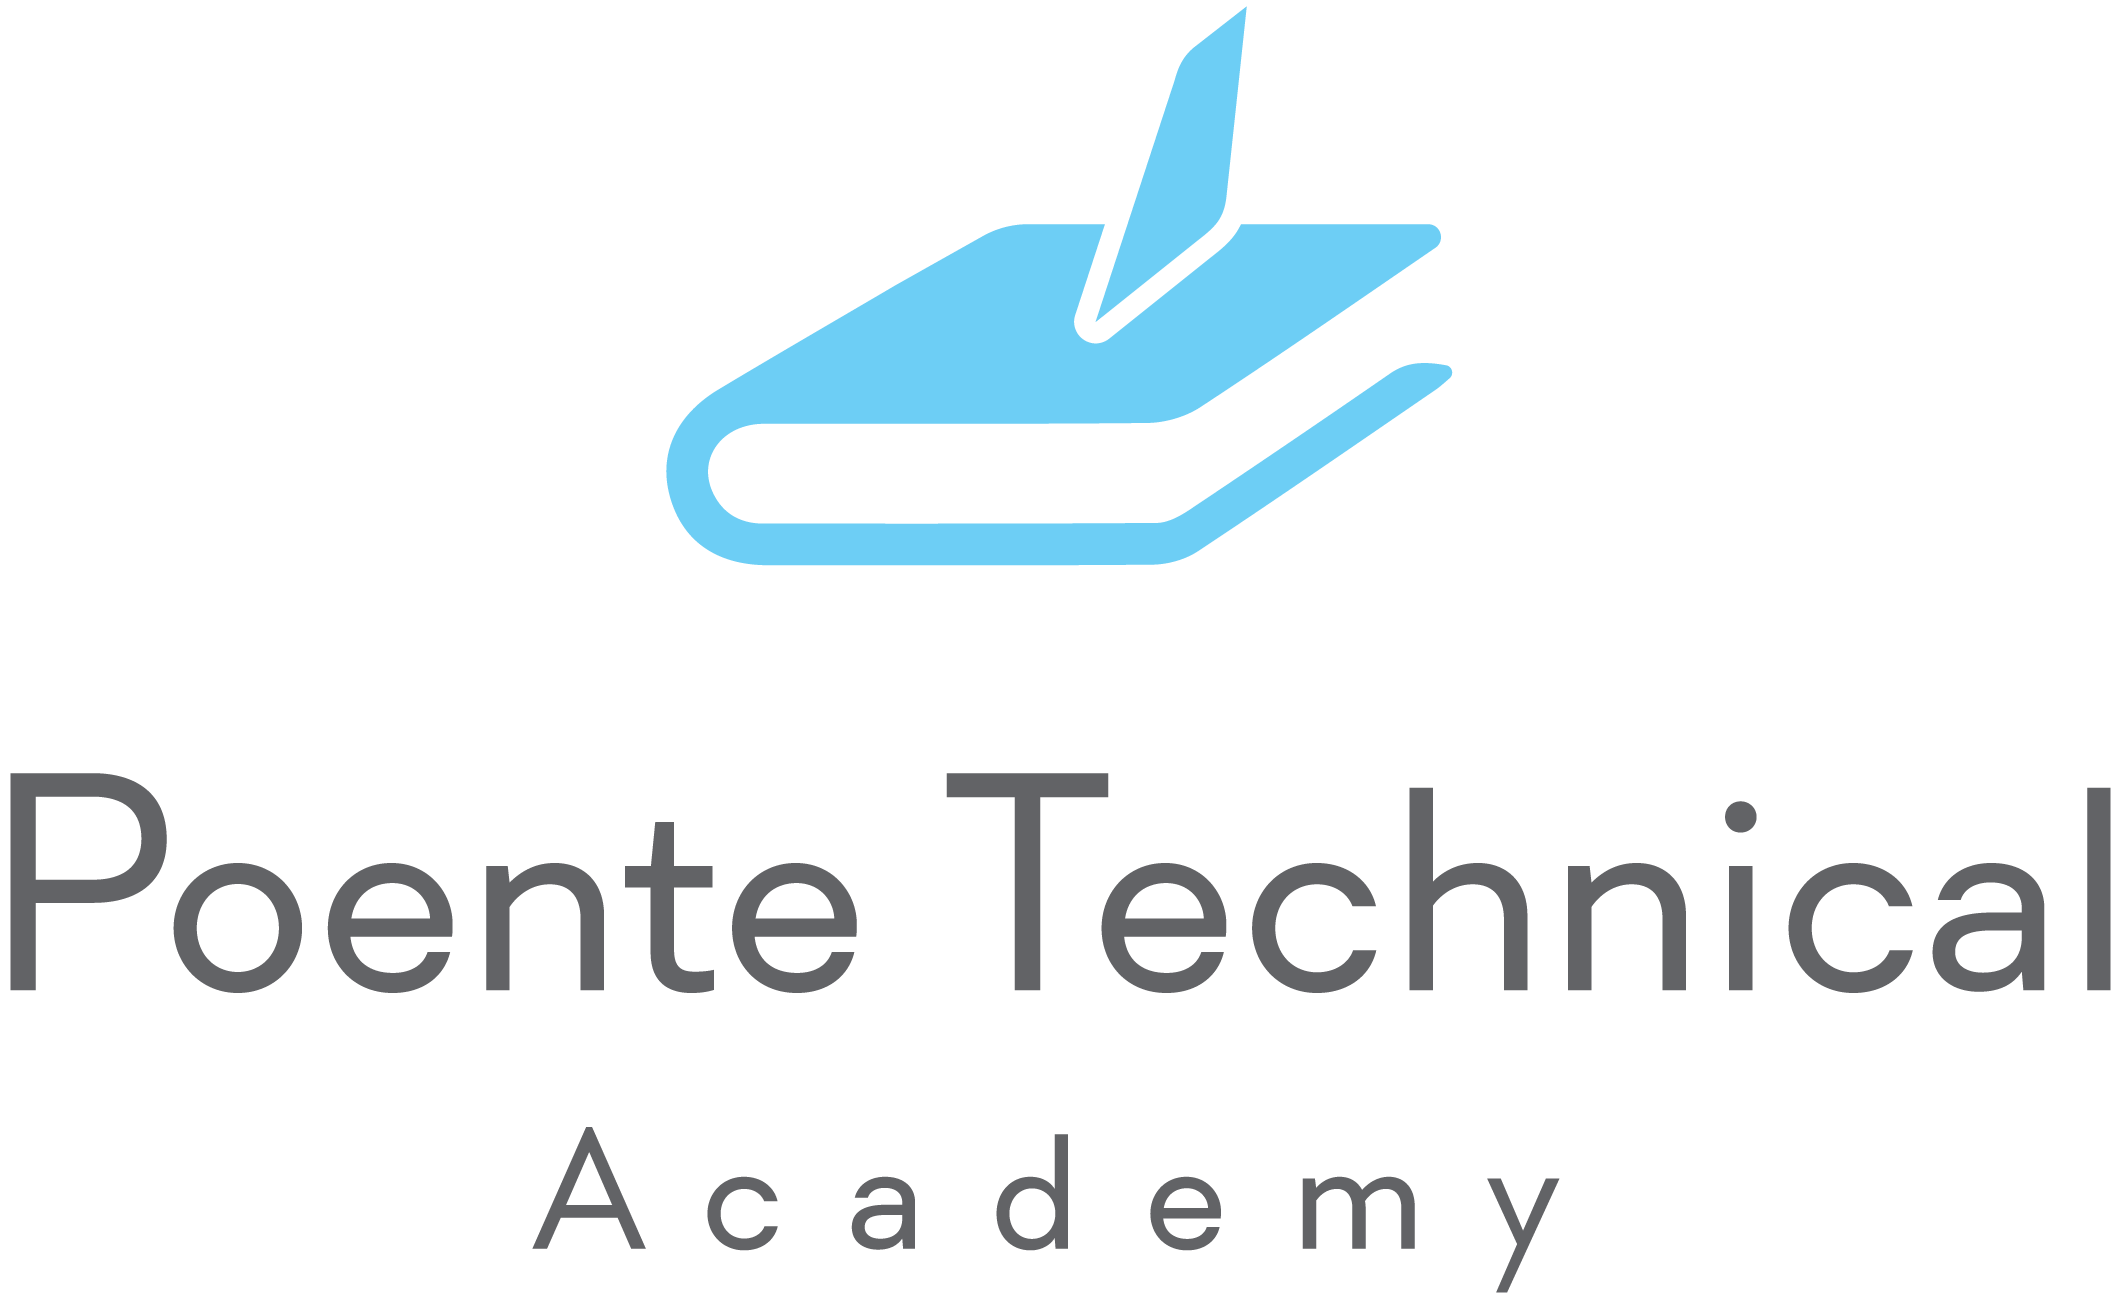 Poente Technical Academy